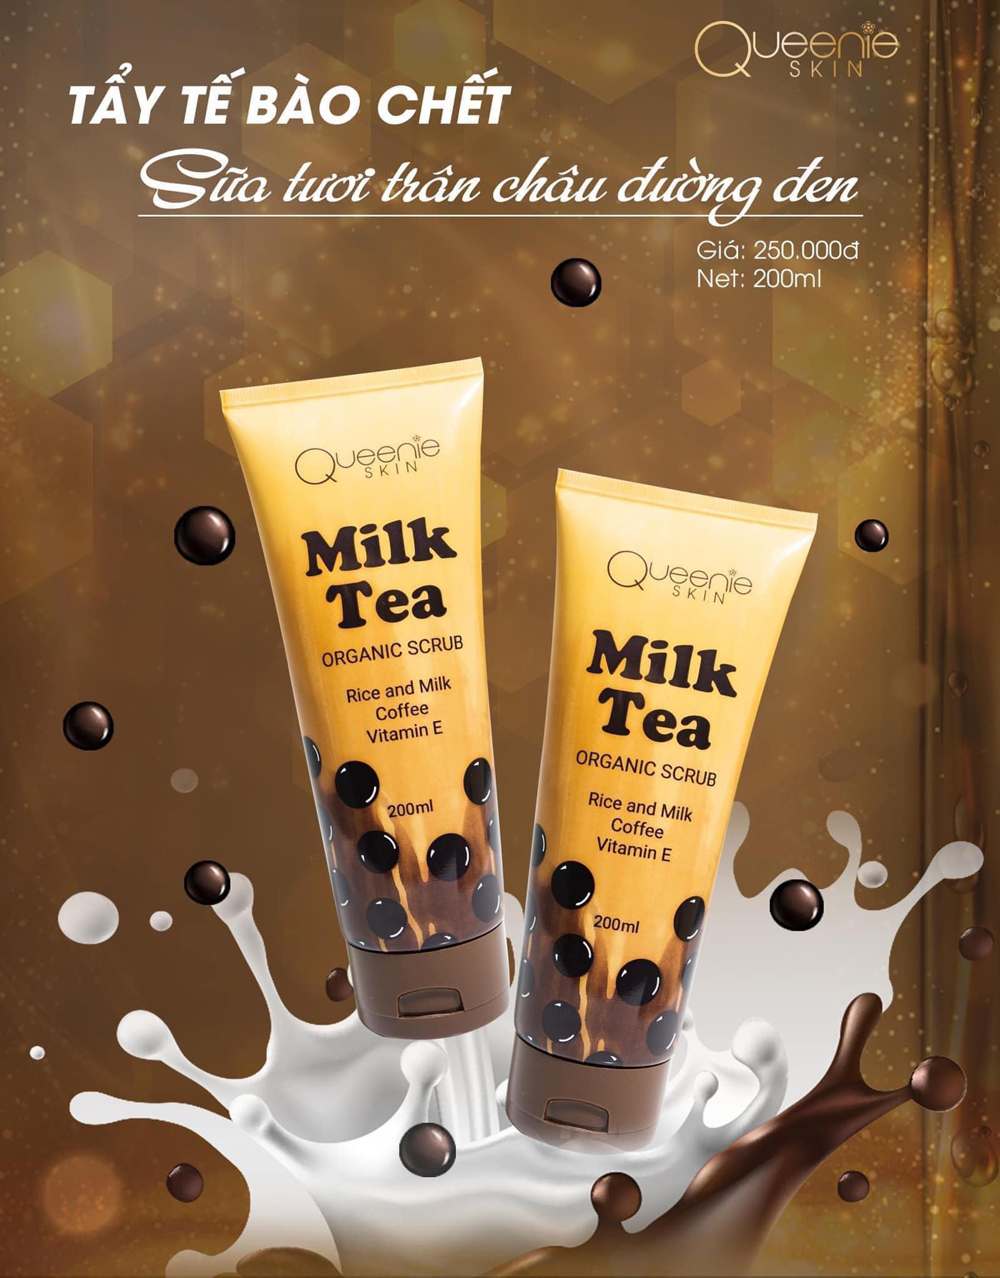 Tẩy tế bào chết sữa tươi trân châu đường đen Queenie Skin - Milk Tea